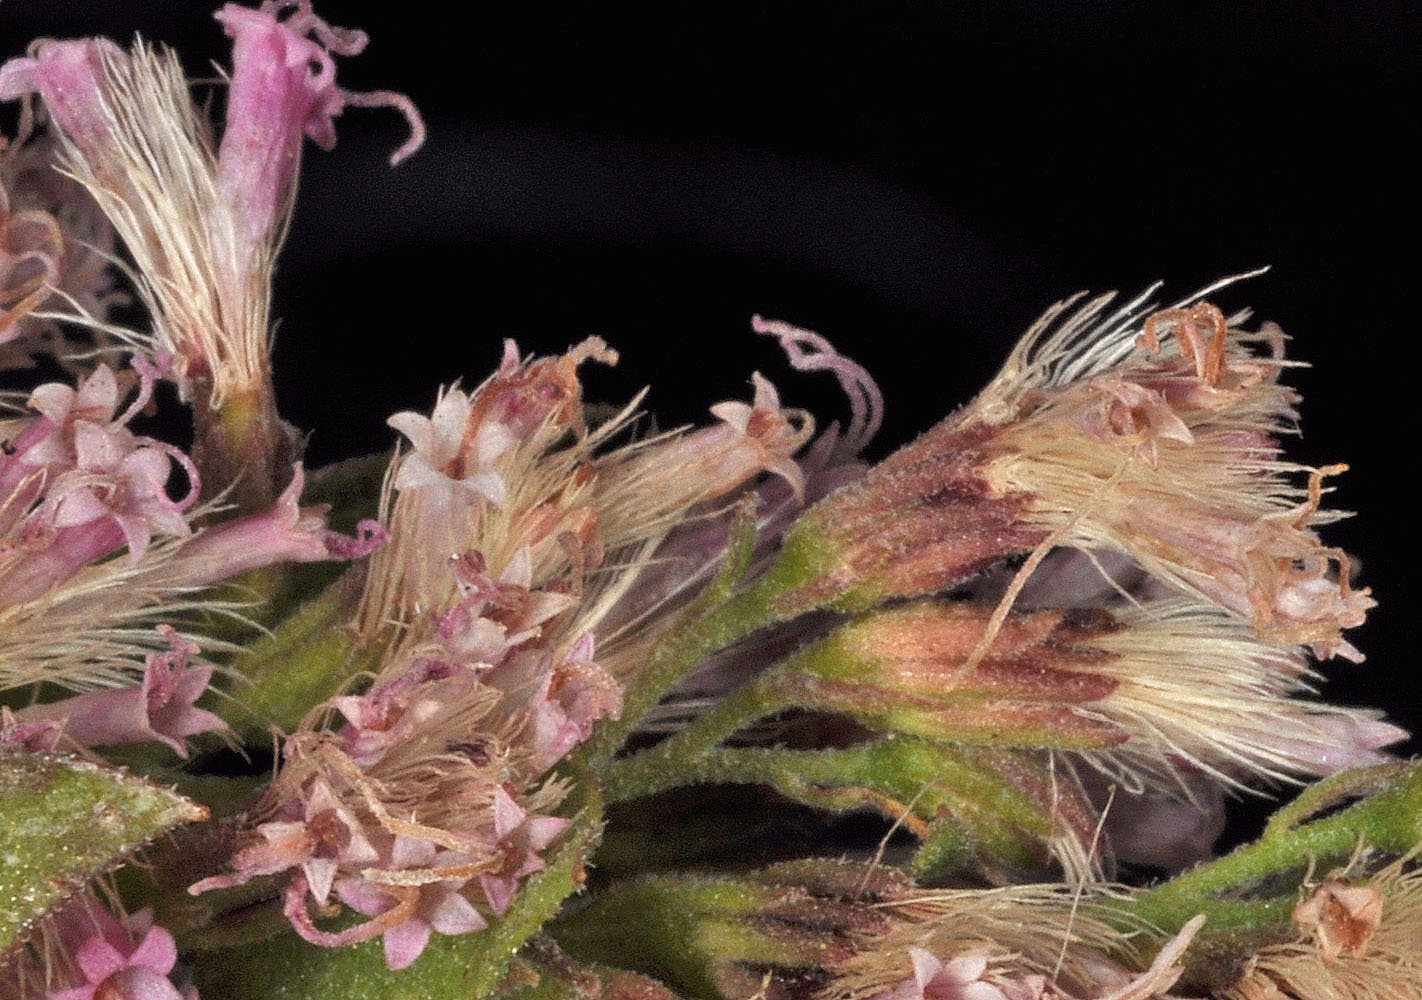 Flora of Eastern Washington Image: Ageratina occidentalis